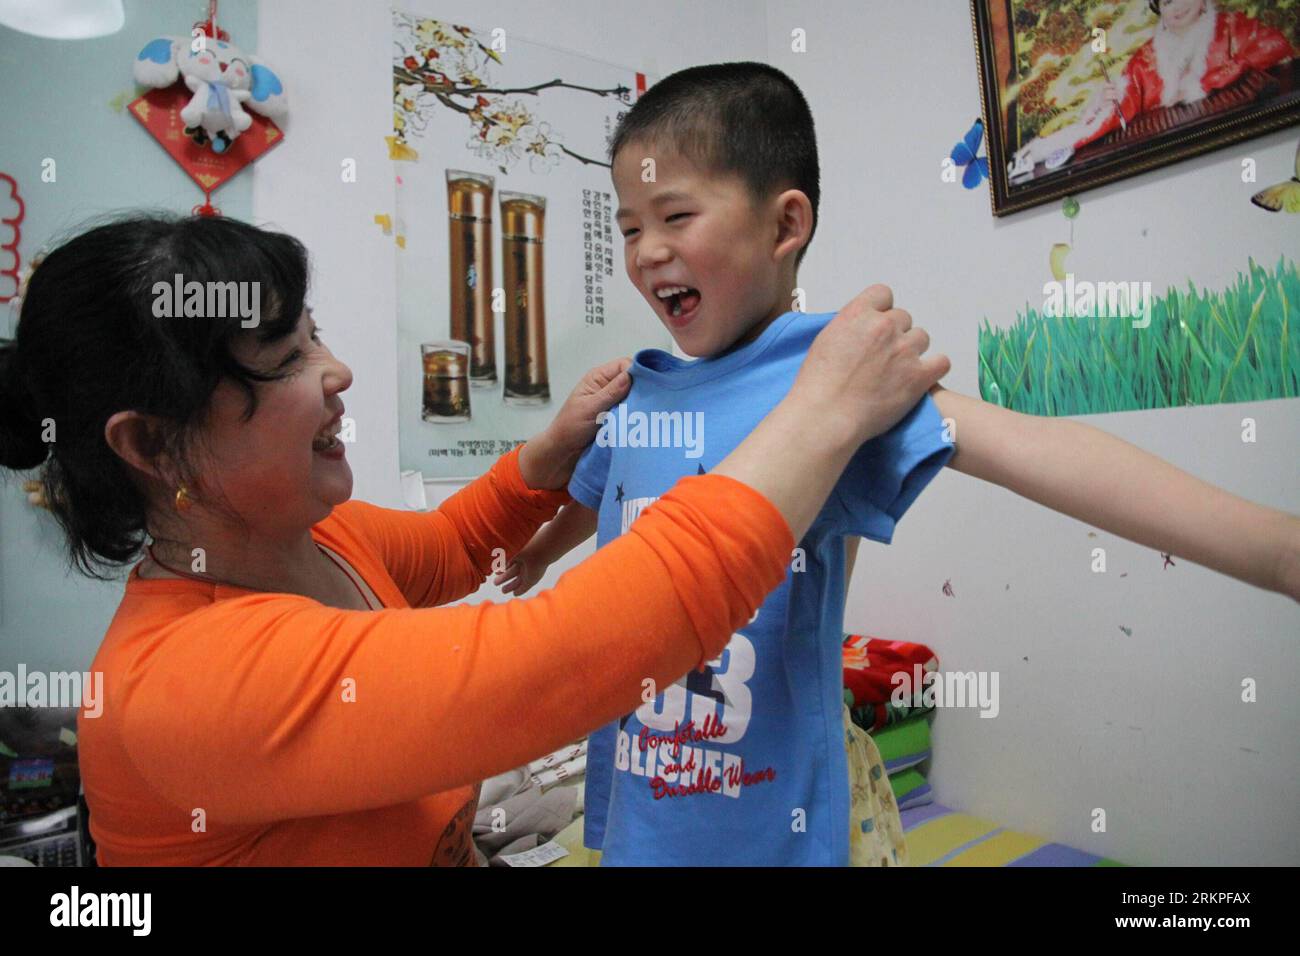 Bildnummer : 57982286 Datum : 11.05.2012 Copyright : imago/Xinhua (120512) -- WEIHAI, 12 mai 2012 (Xinhua) -- Liu Anni aide Meng Jiale à porter un nouveau T-shirt à la maison à Weihai, dans la province du Shandong de l'est de la Chine, le 11 mai 2012, deux jours avant la fête des mères. Il y a plusieurs citoyens à Weihai qui prennent soin des enfants dans les maisons de protection sociale et ramènent souvent les enfants à la maison et les laissent ressentir l'amour des mères. (Xinhua/Yu Qibo) (zhs) CHINE-SHANDONG-MAISON DE PROTECTION SOCIALE-ENFANTS (CN) PUBLICATIONxNOTxINxCHN Gesellschaft Erziehung Tagesmutter Betreuung Kinderbetreuung xrj x0x 2012 quer 57982286 Banque D'Images